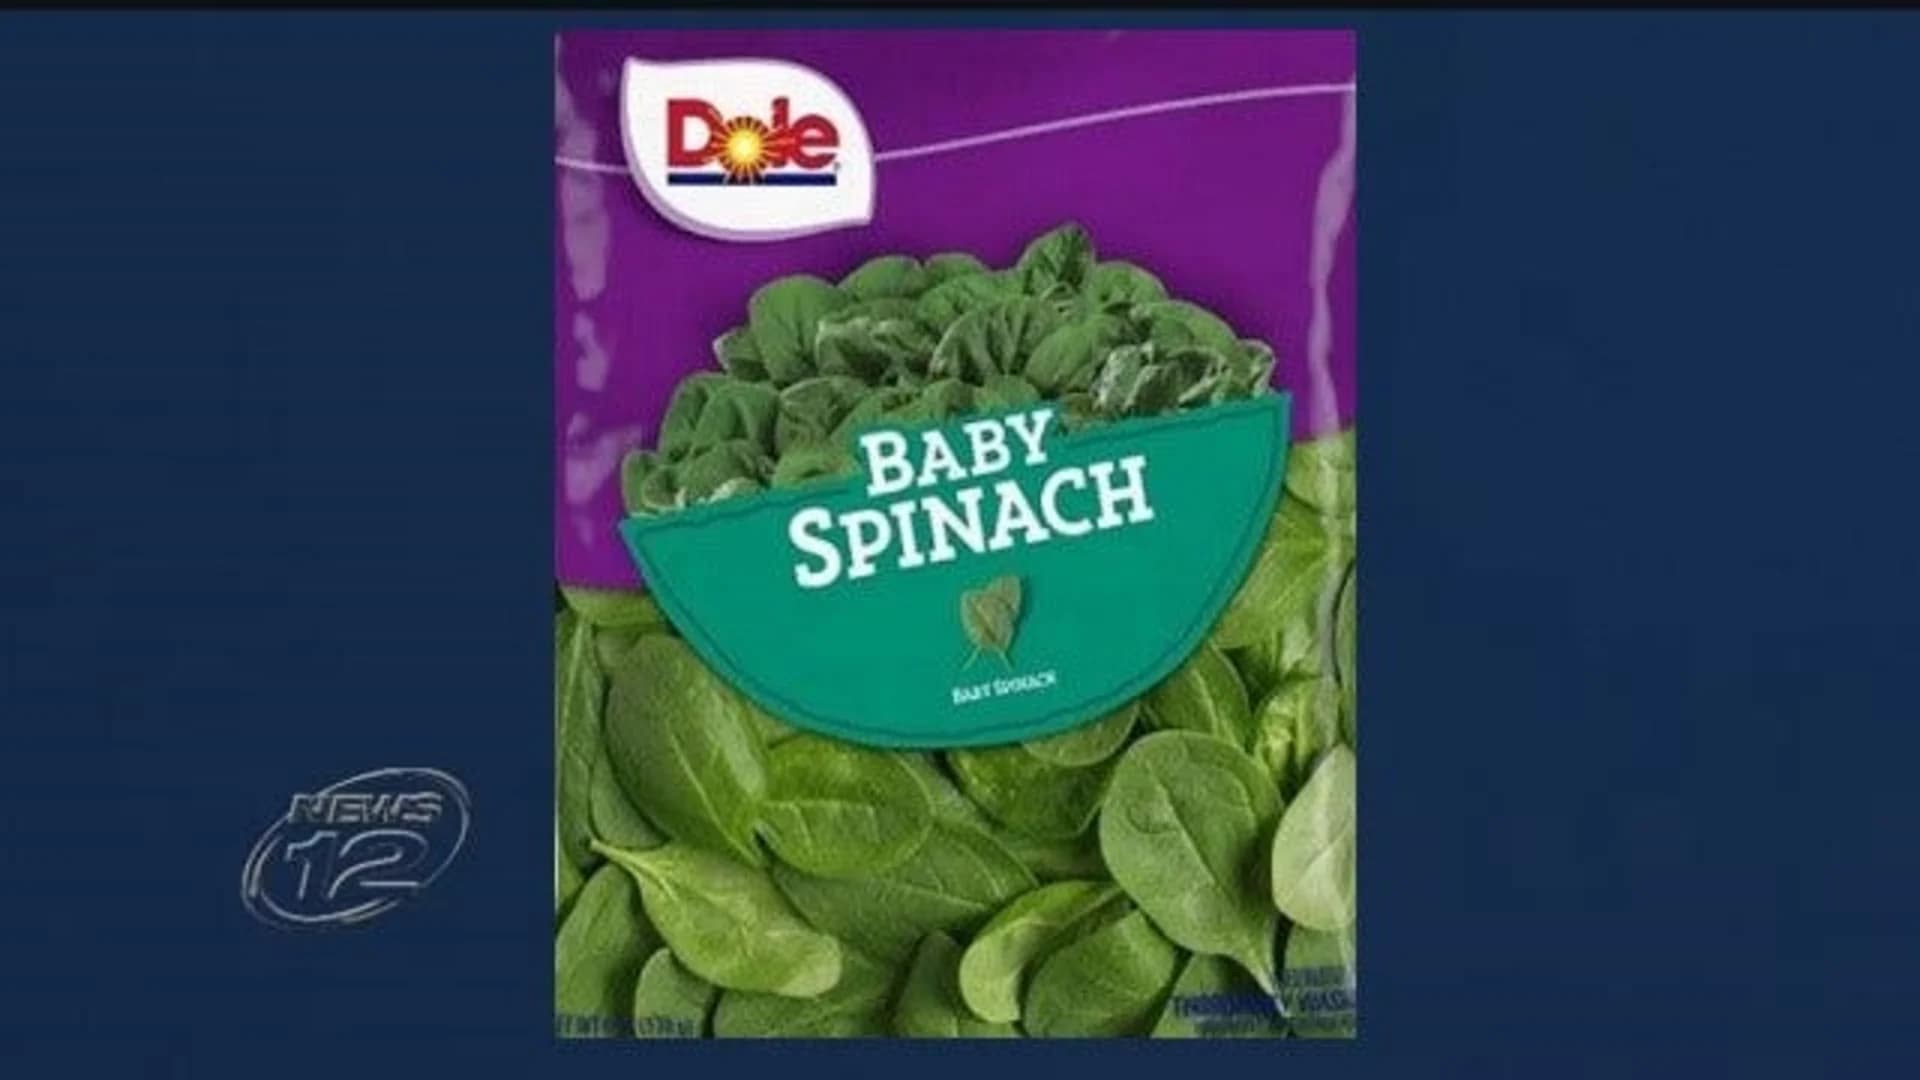 FDA: Dole recalls baby spinach over salmonella concerns